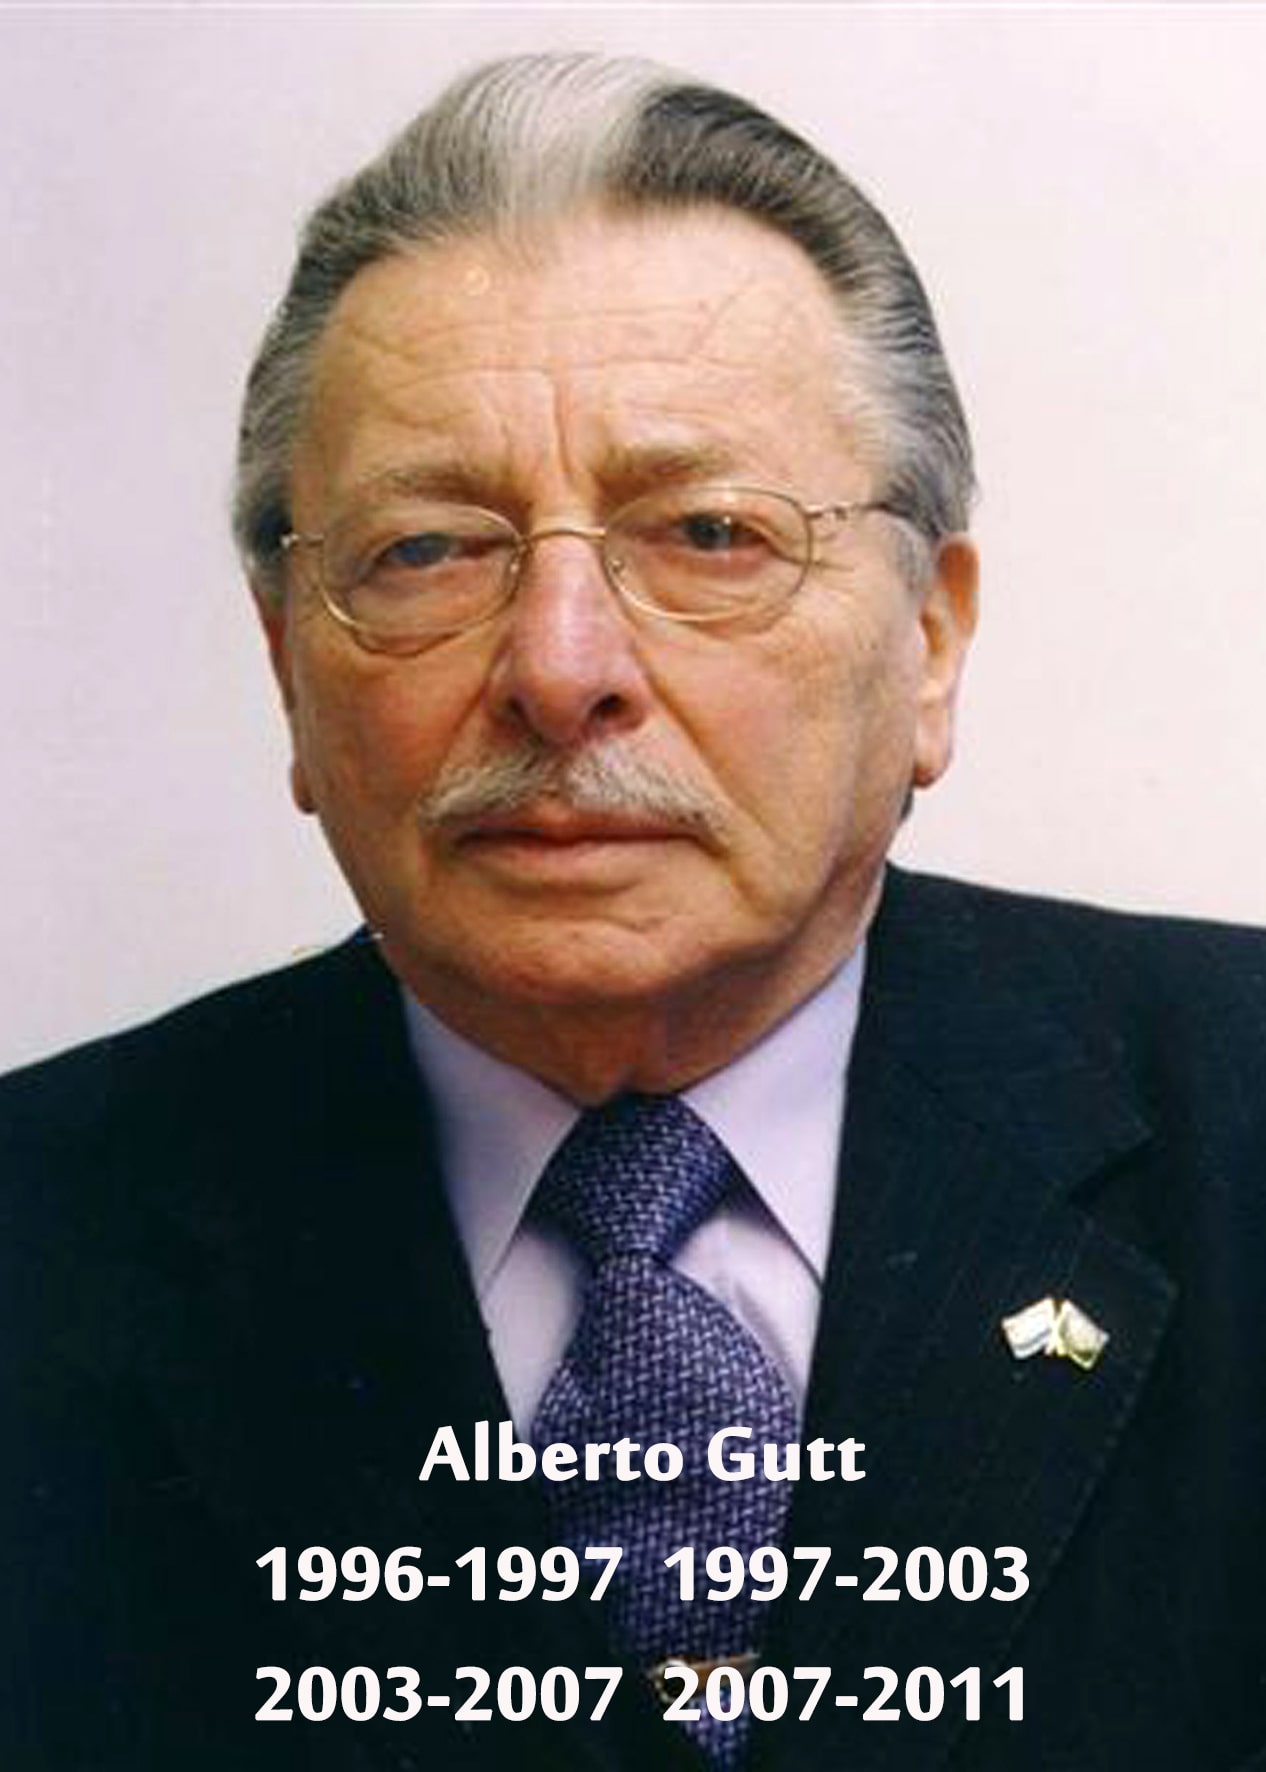 ALBERTO GUTT